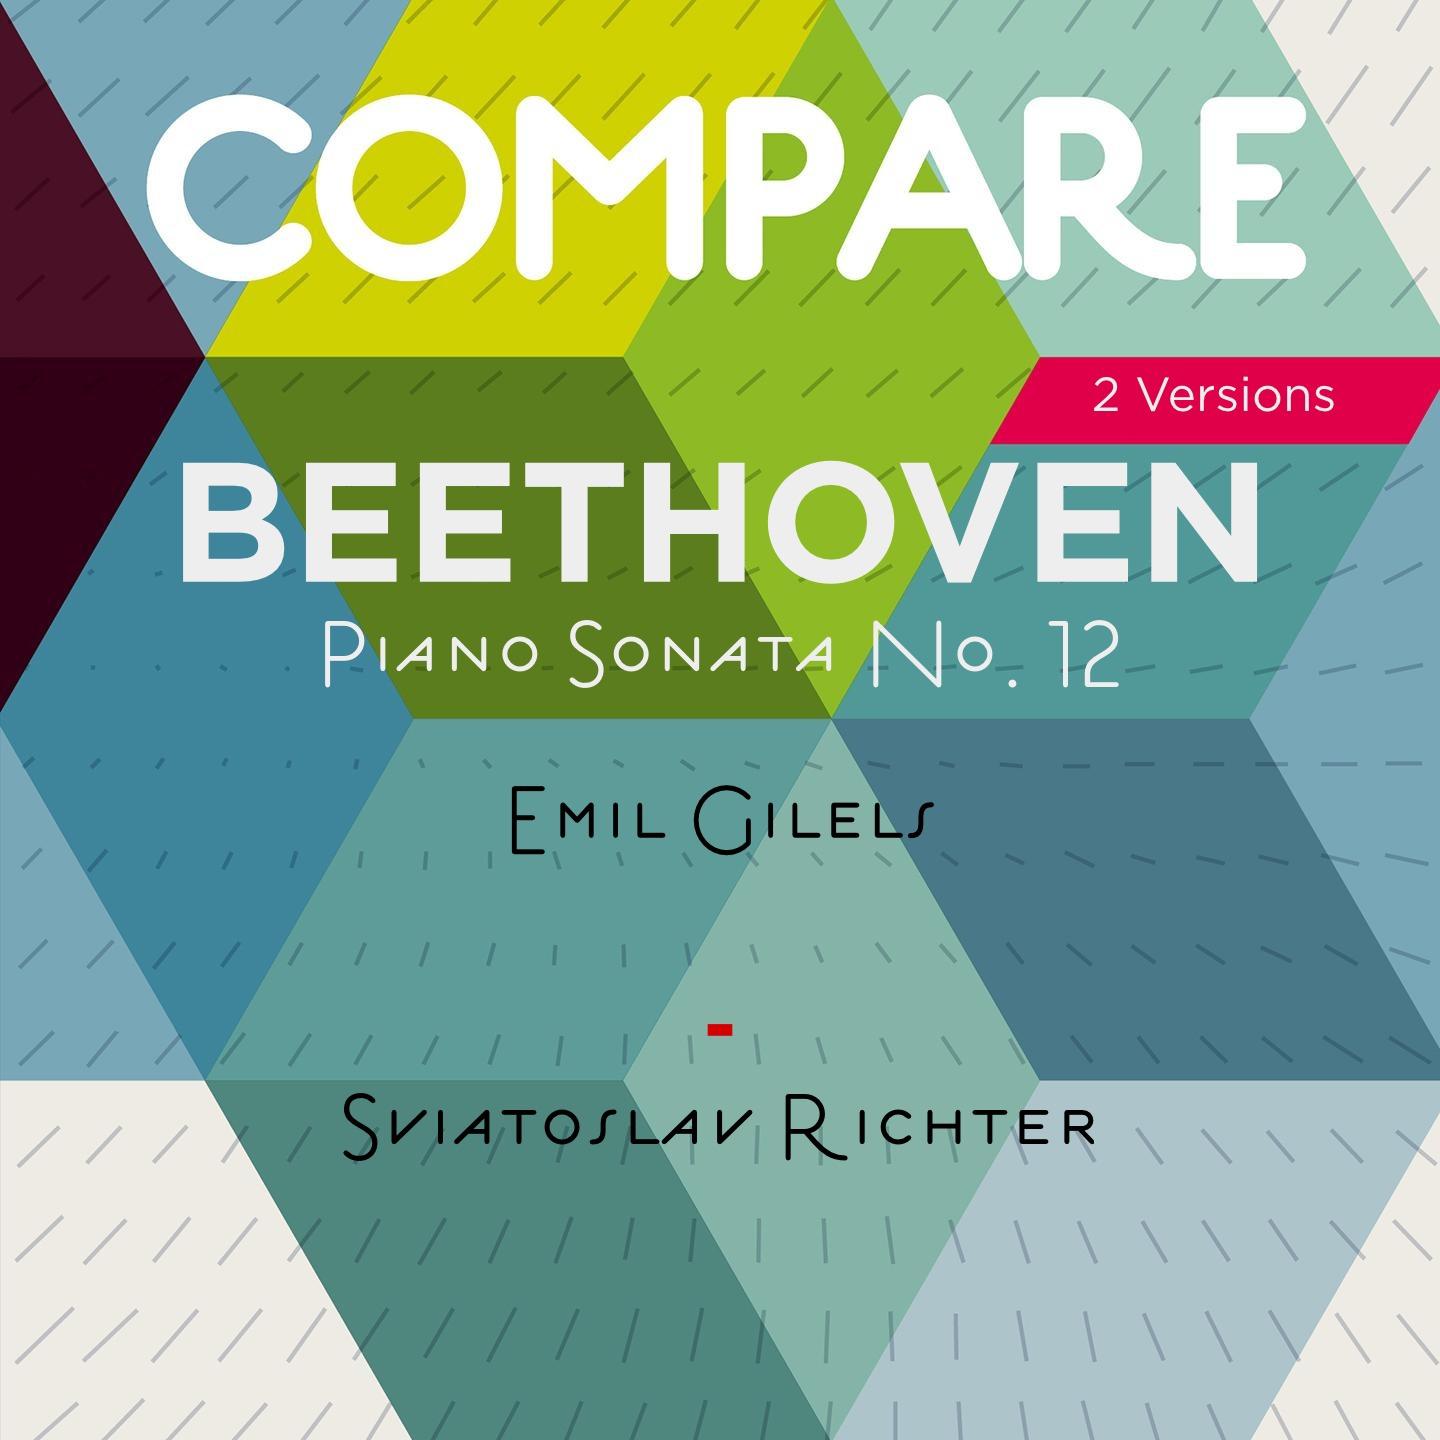 Beethoven: Piano Sonata No. 12, Emil Gilels vs. Sviatoslav Richter